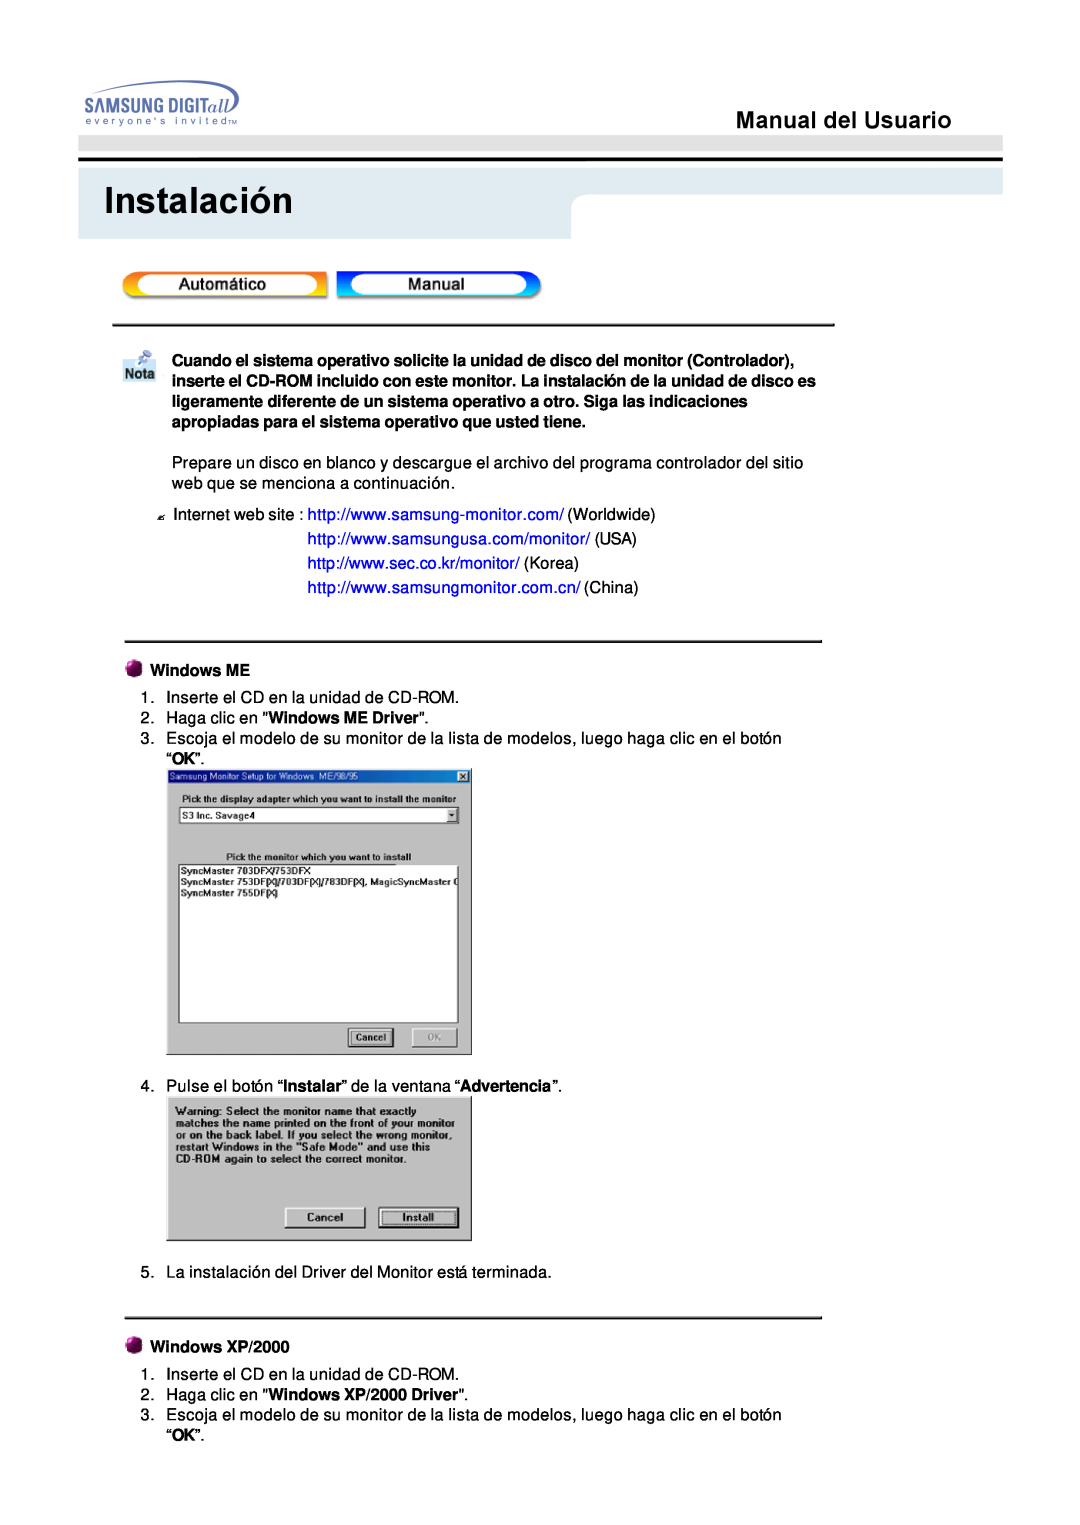 Samsung 153S manual Instalación, Manual del Usuario, Windows ME 